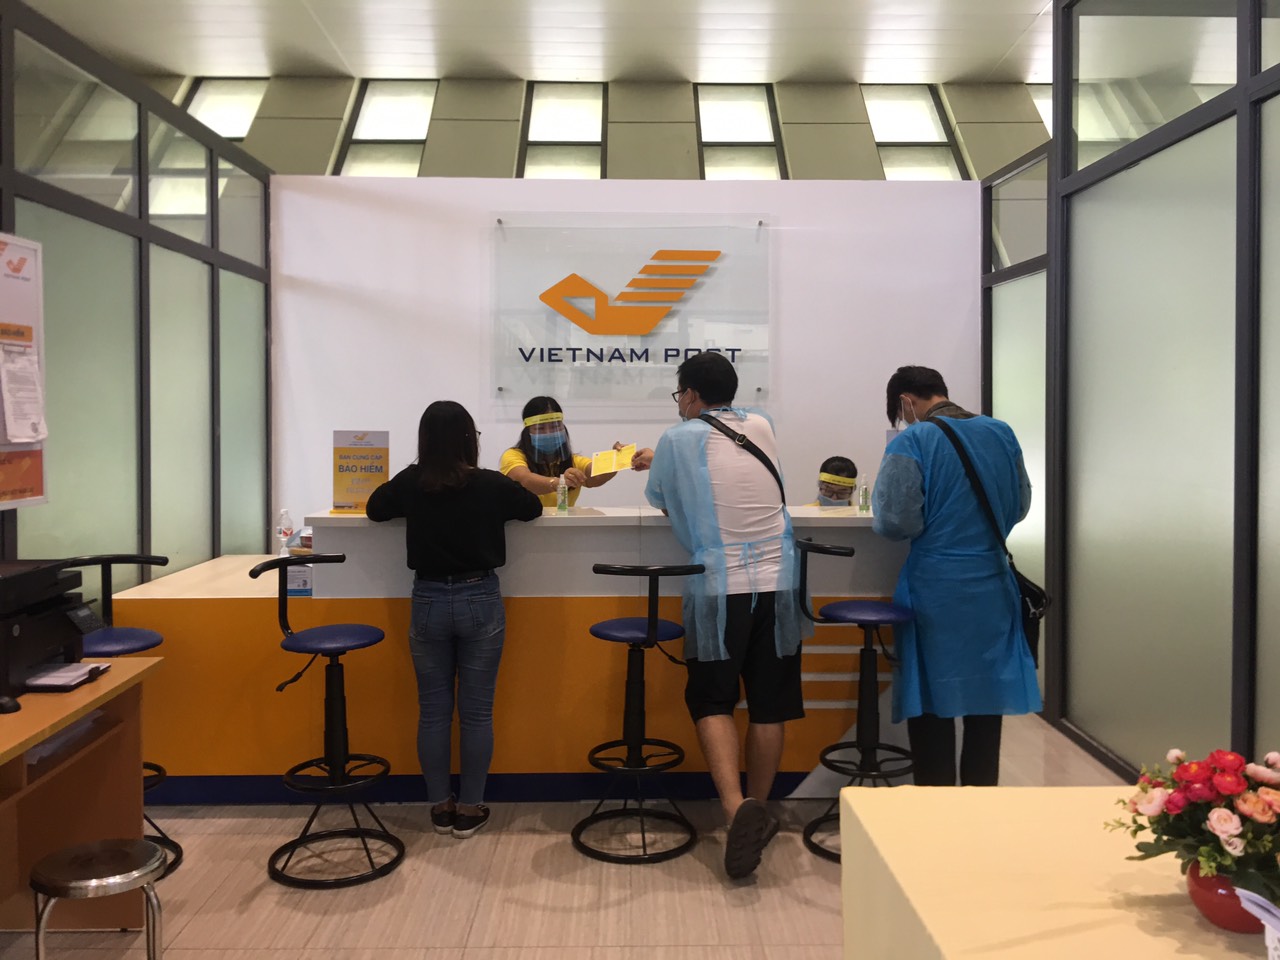 Bưu cục cửa khẩu Hữu Nghị - Bưu điện tỉnh Lạng Sơn đảm bảo các điều kiện phục vụ khách hàng trong dich Covid 19.